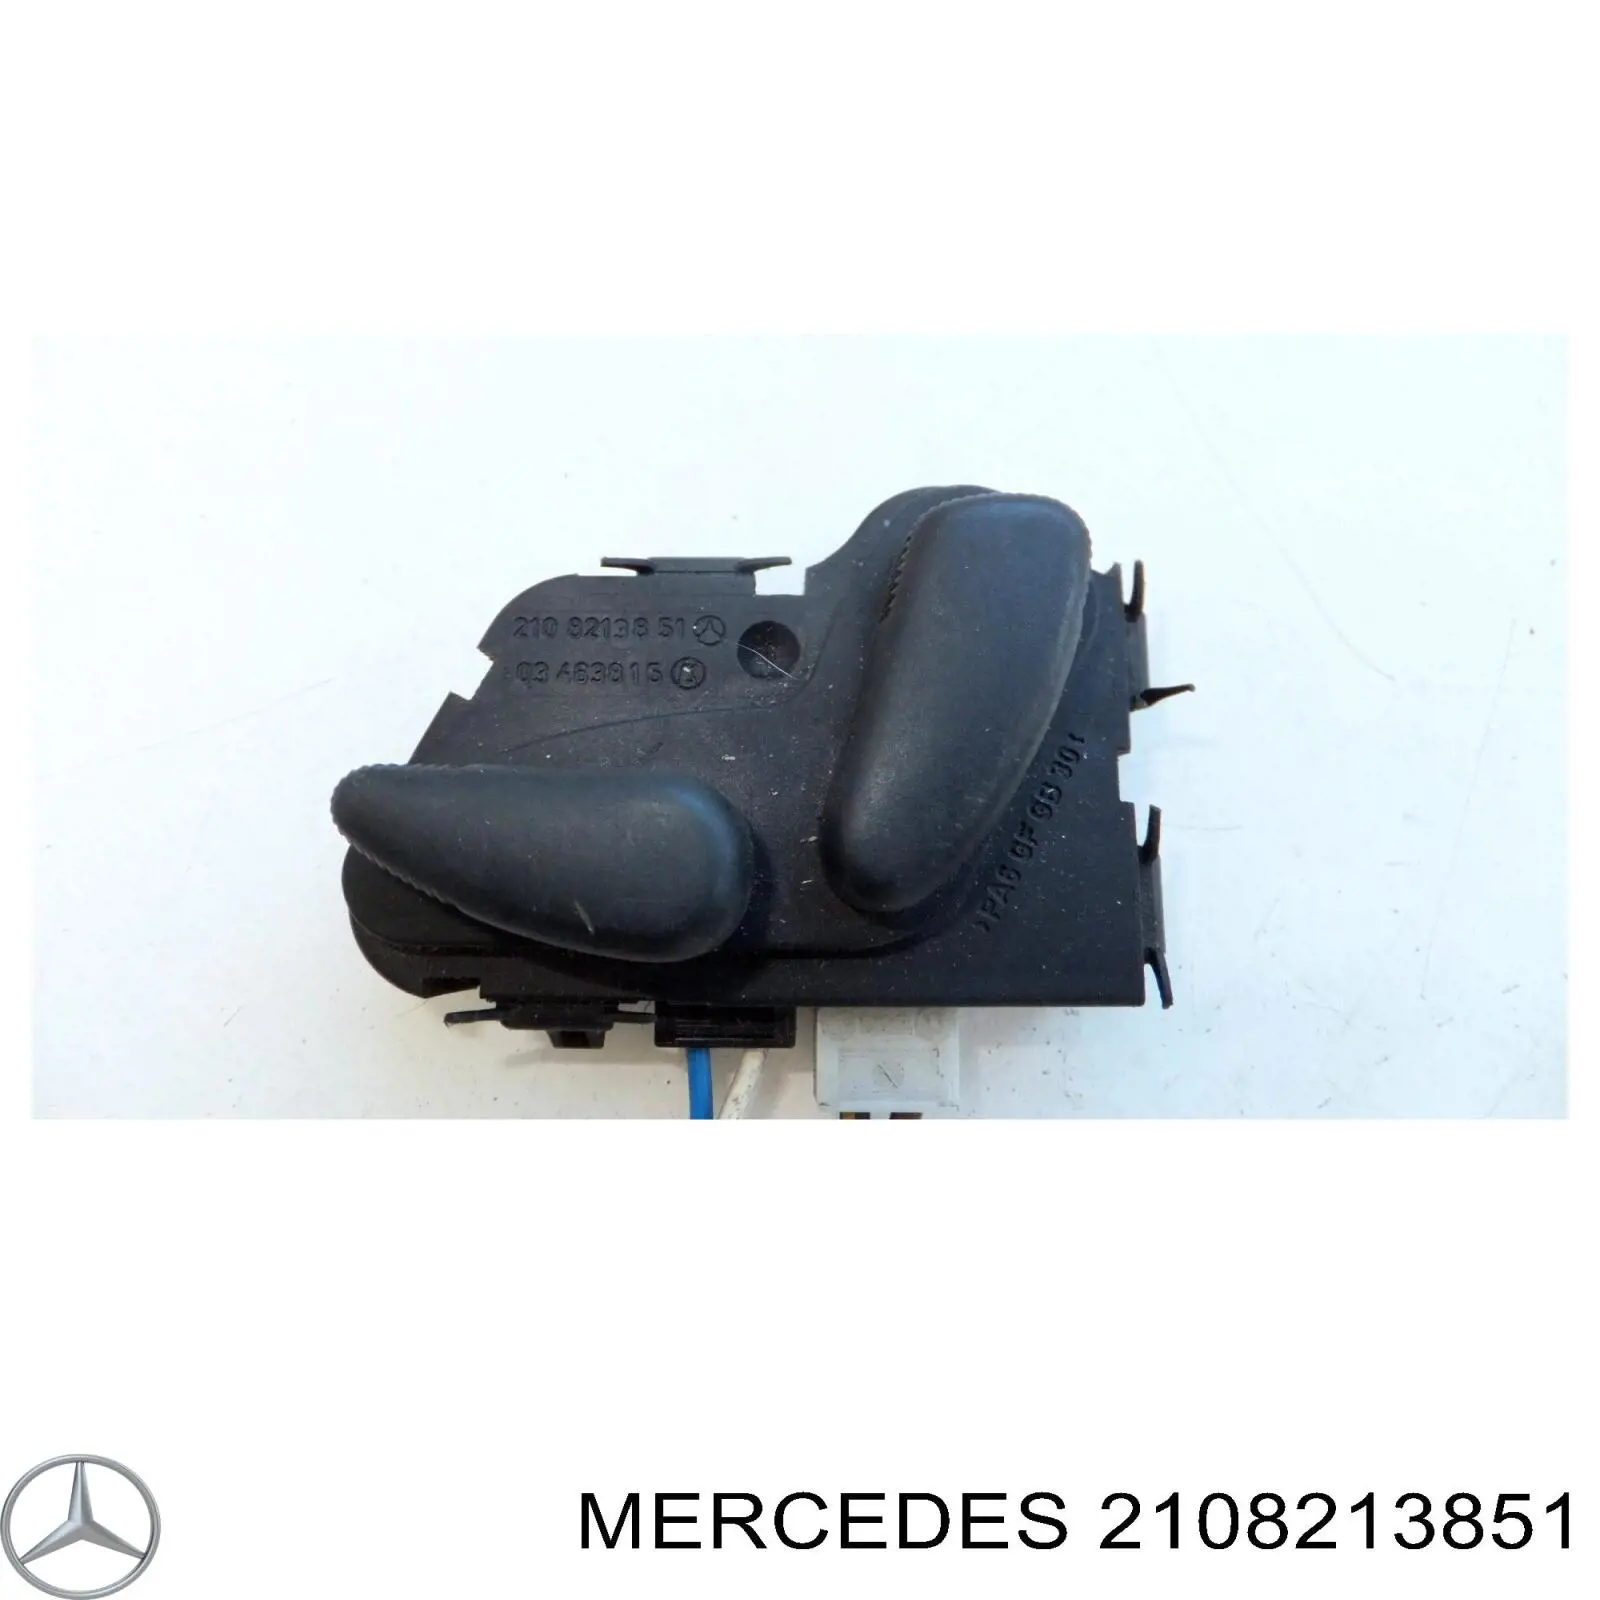 2108213851 Mercedes boton de ajuste de asiento bloque derecho